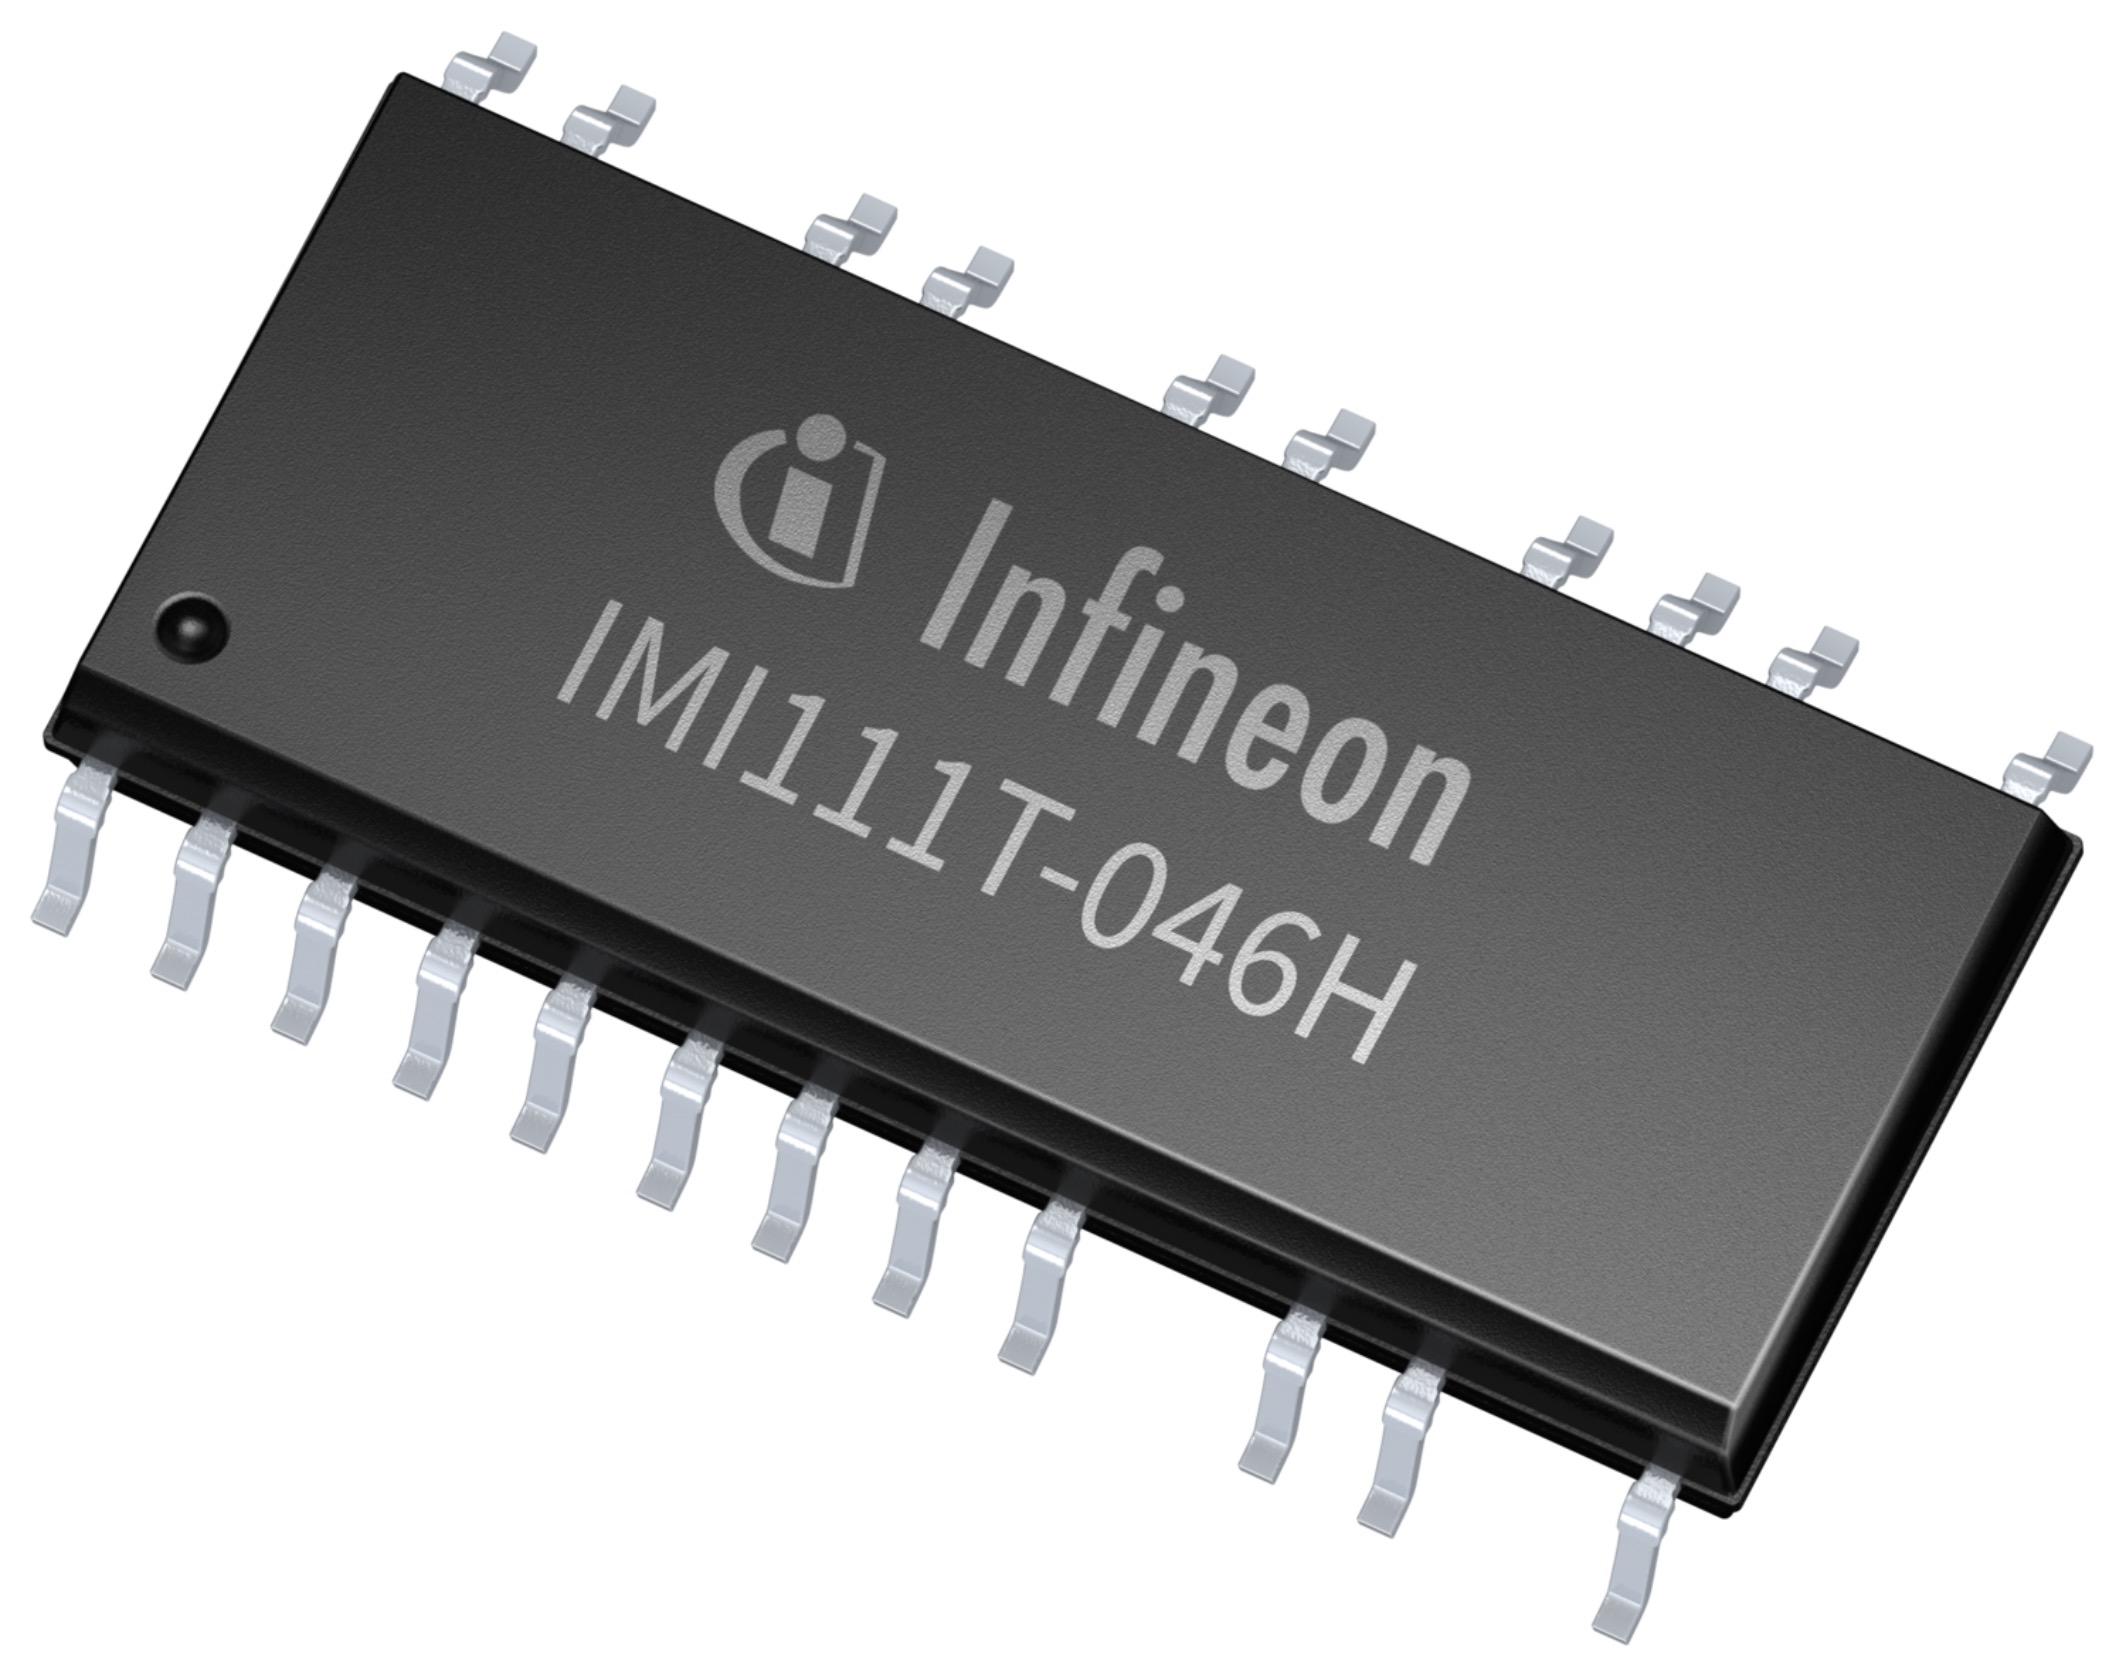 英飞凌科技全新 iMOTION IMI110 系列智能功率模块中的 IMI111T-046H 型号产品.jpg